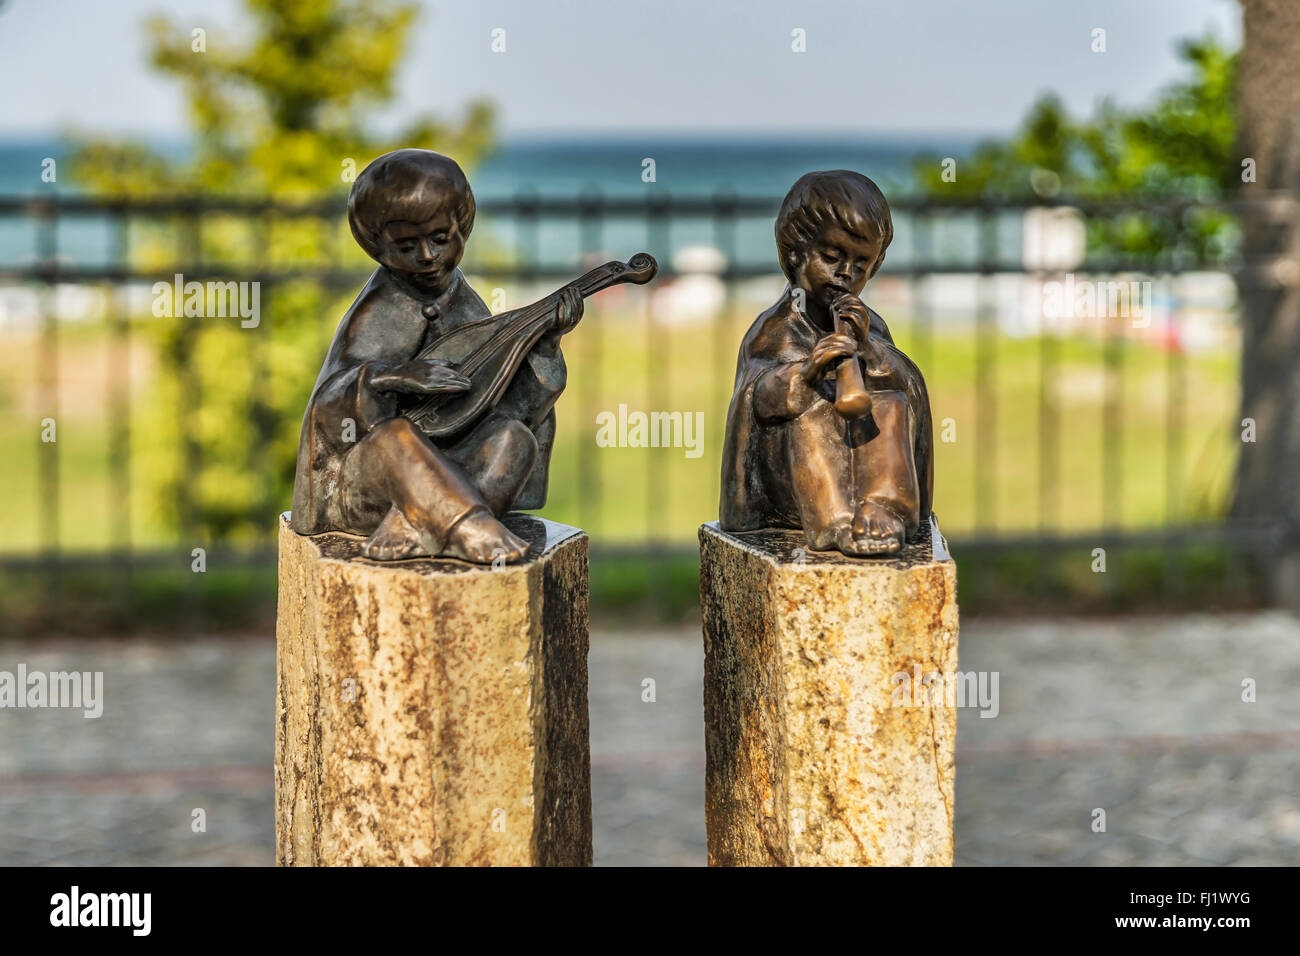 Les sculptures en bronze joueur de luth et joueur de flûte situé à la promenade de la plage de Binz, Ruegen Island, Allemagne, Europe Banque D'Images